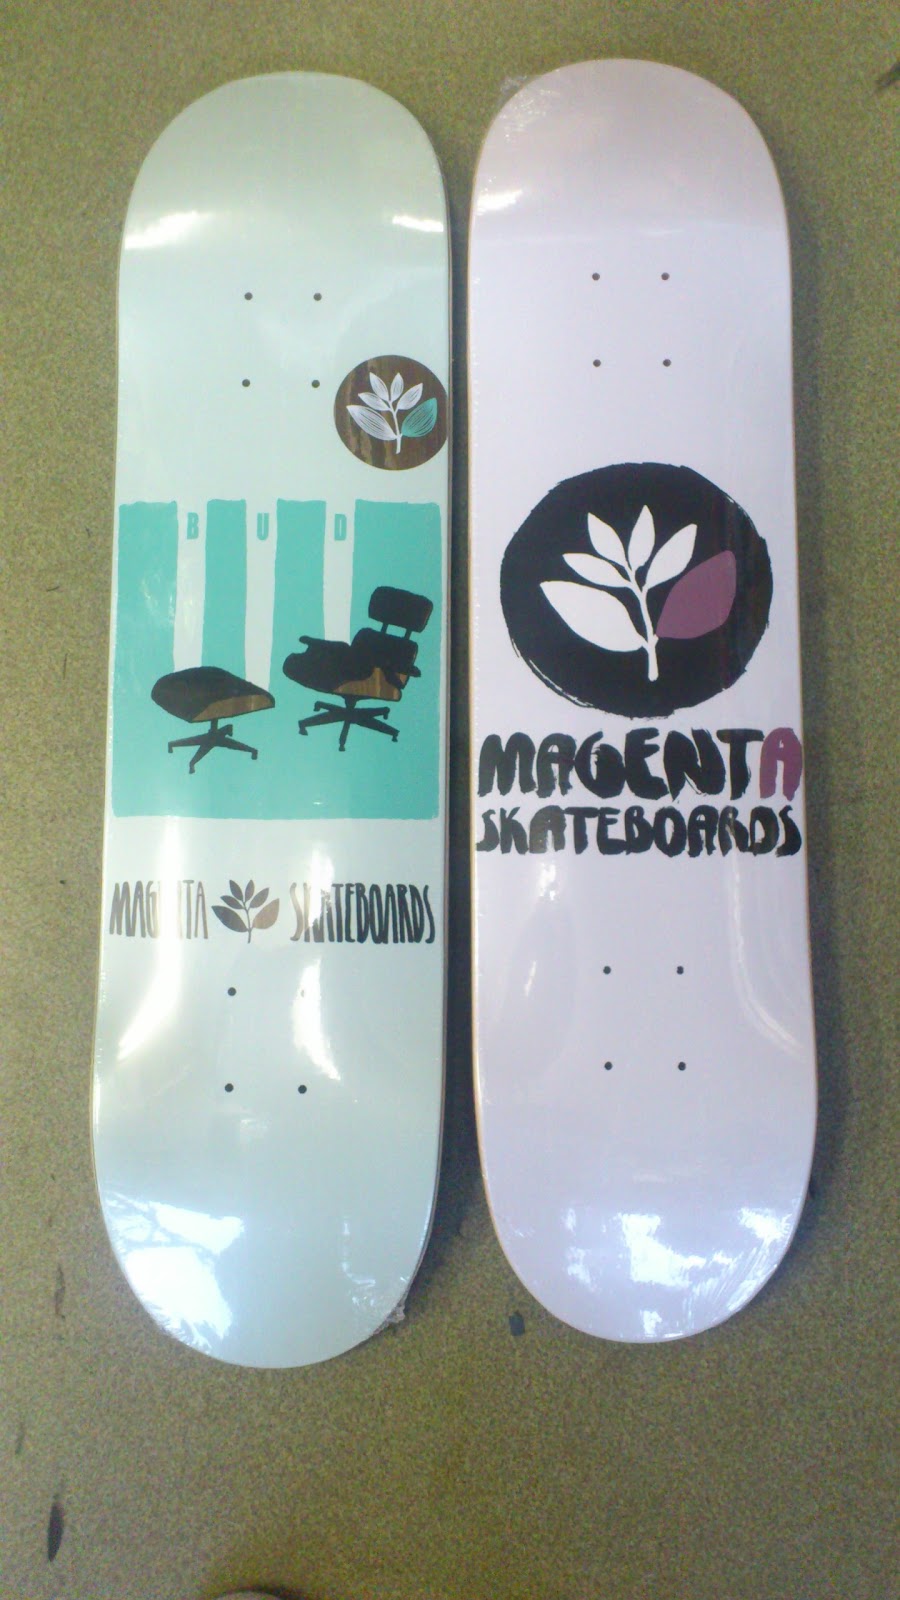 SpinCity: Magenta Skateboards